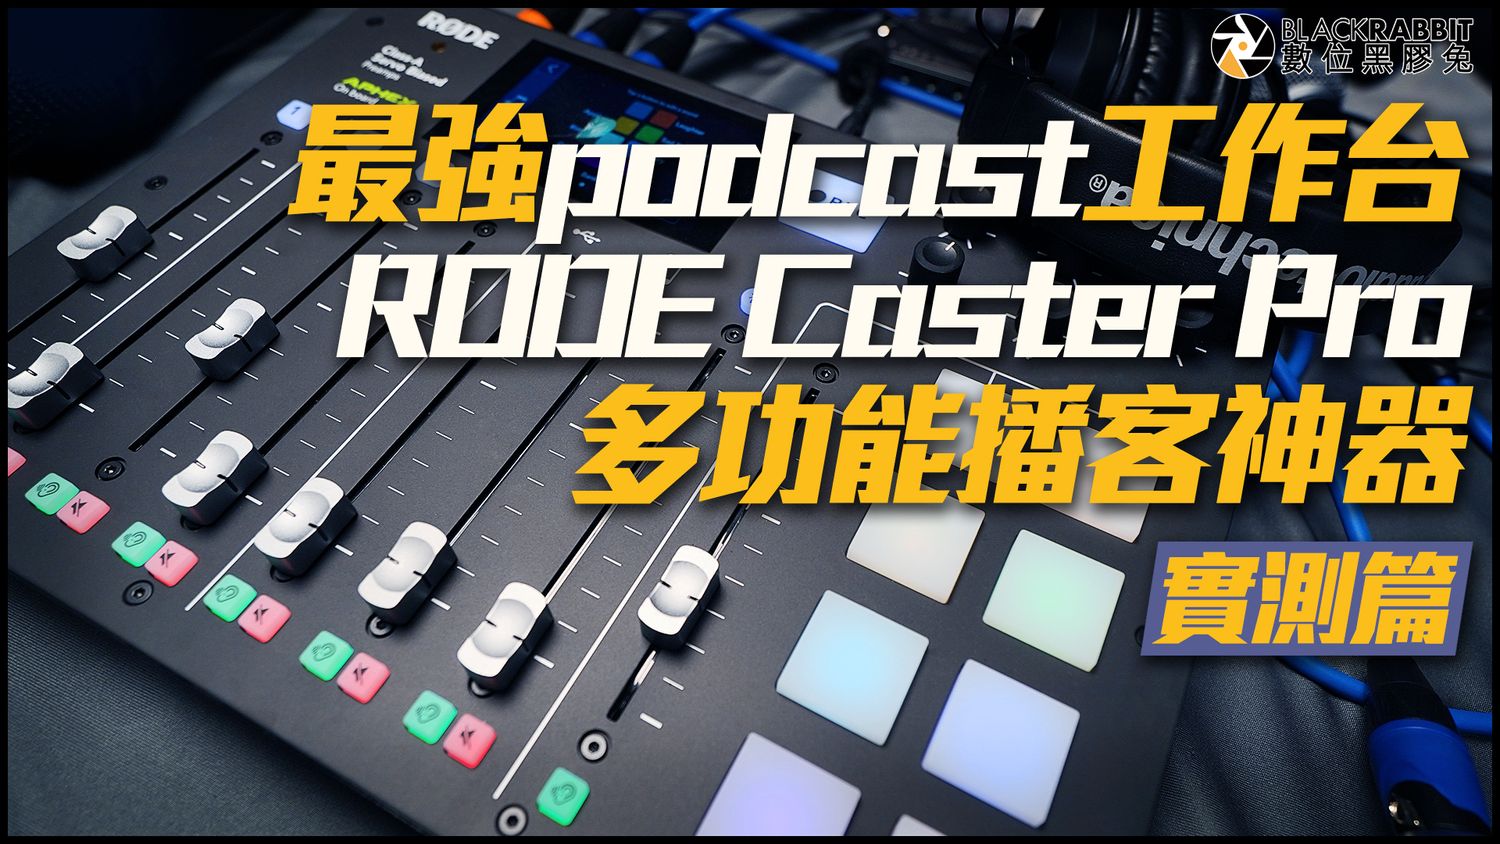 黑膠兔商行 Blackrabbit - RODE Caster Pro